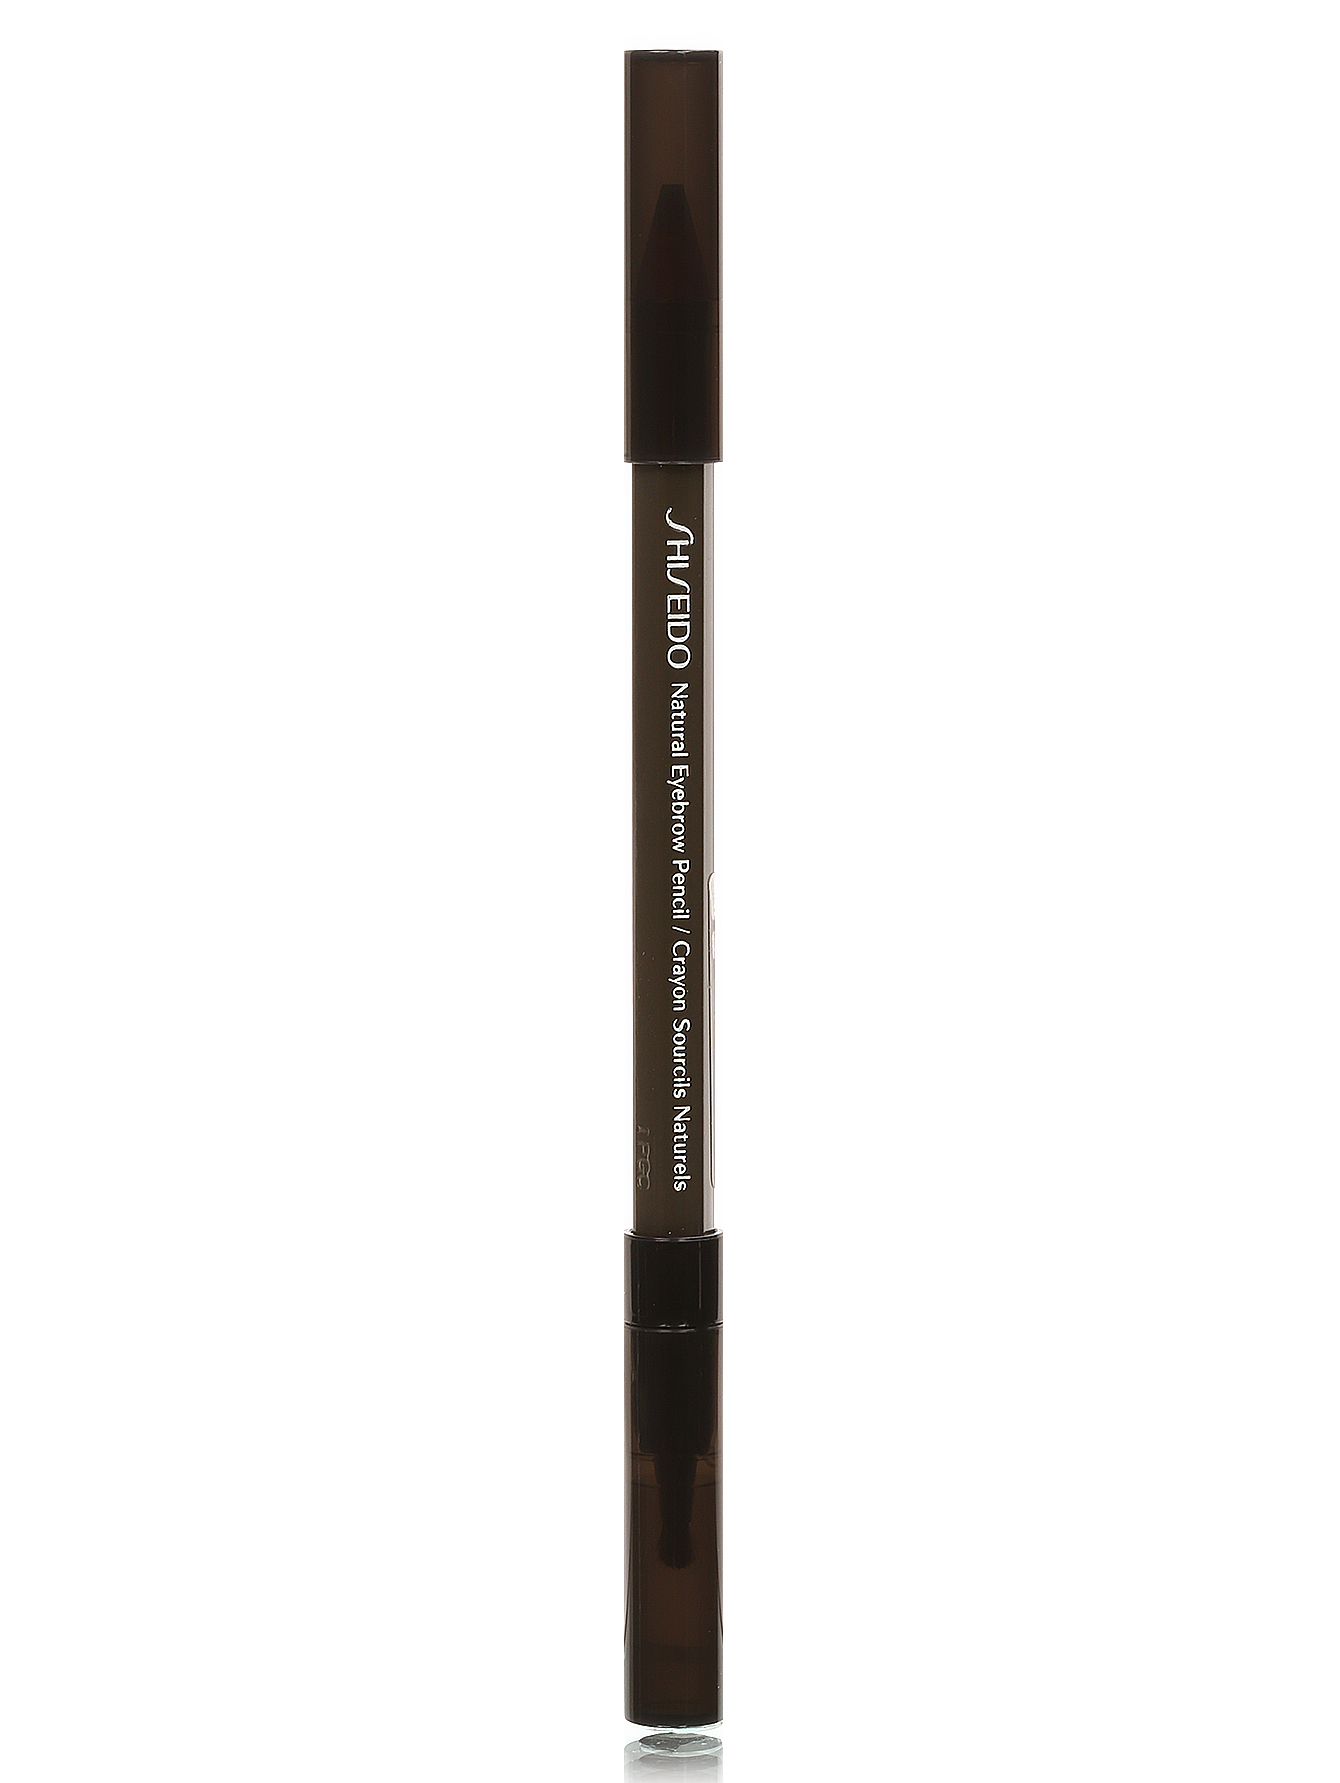 Натуральный карандаш для бровей - BR602, Eyebrow Pencil - Модель Верх-Низ